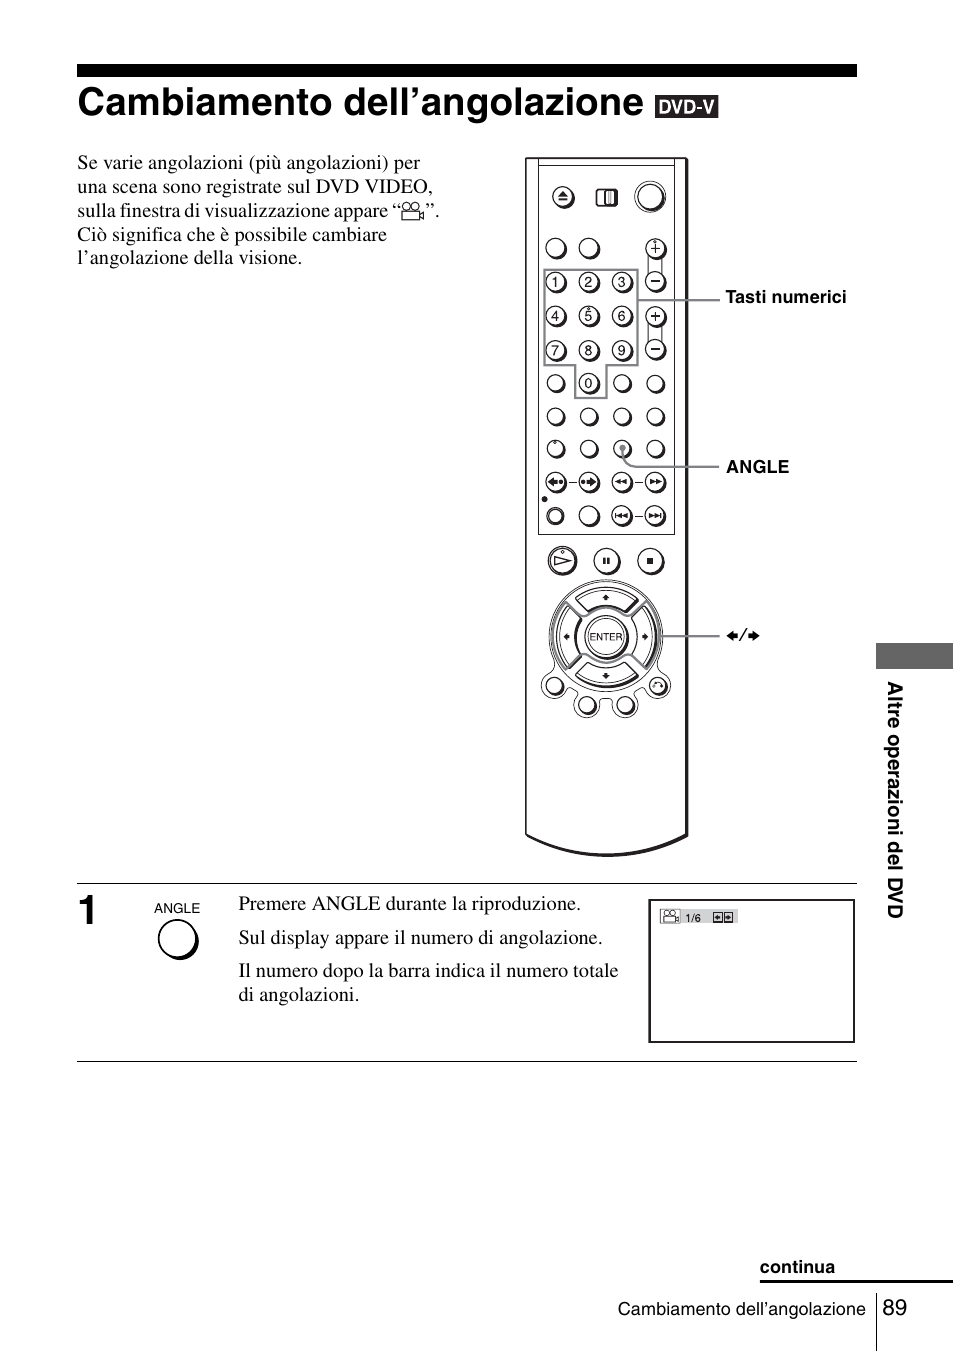 Cambiamento dell’angolazione, 89 c | Sony SLV-D980PD Manuale d'uso | Pagina 89 / 156